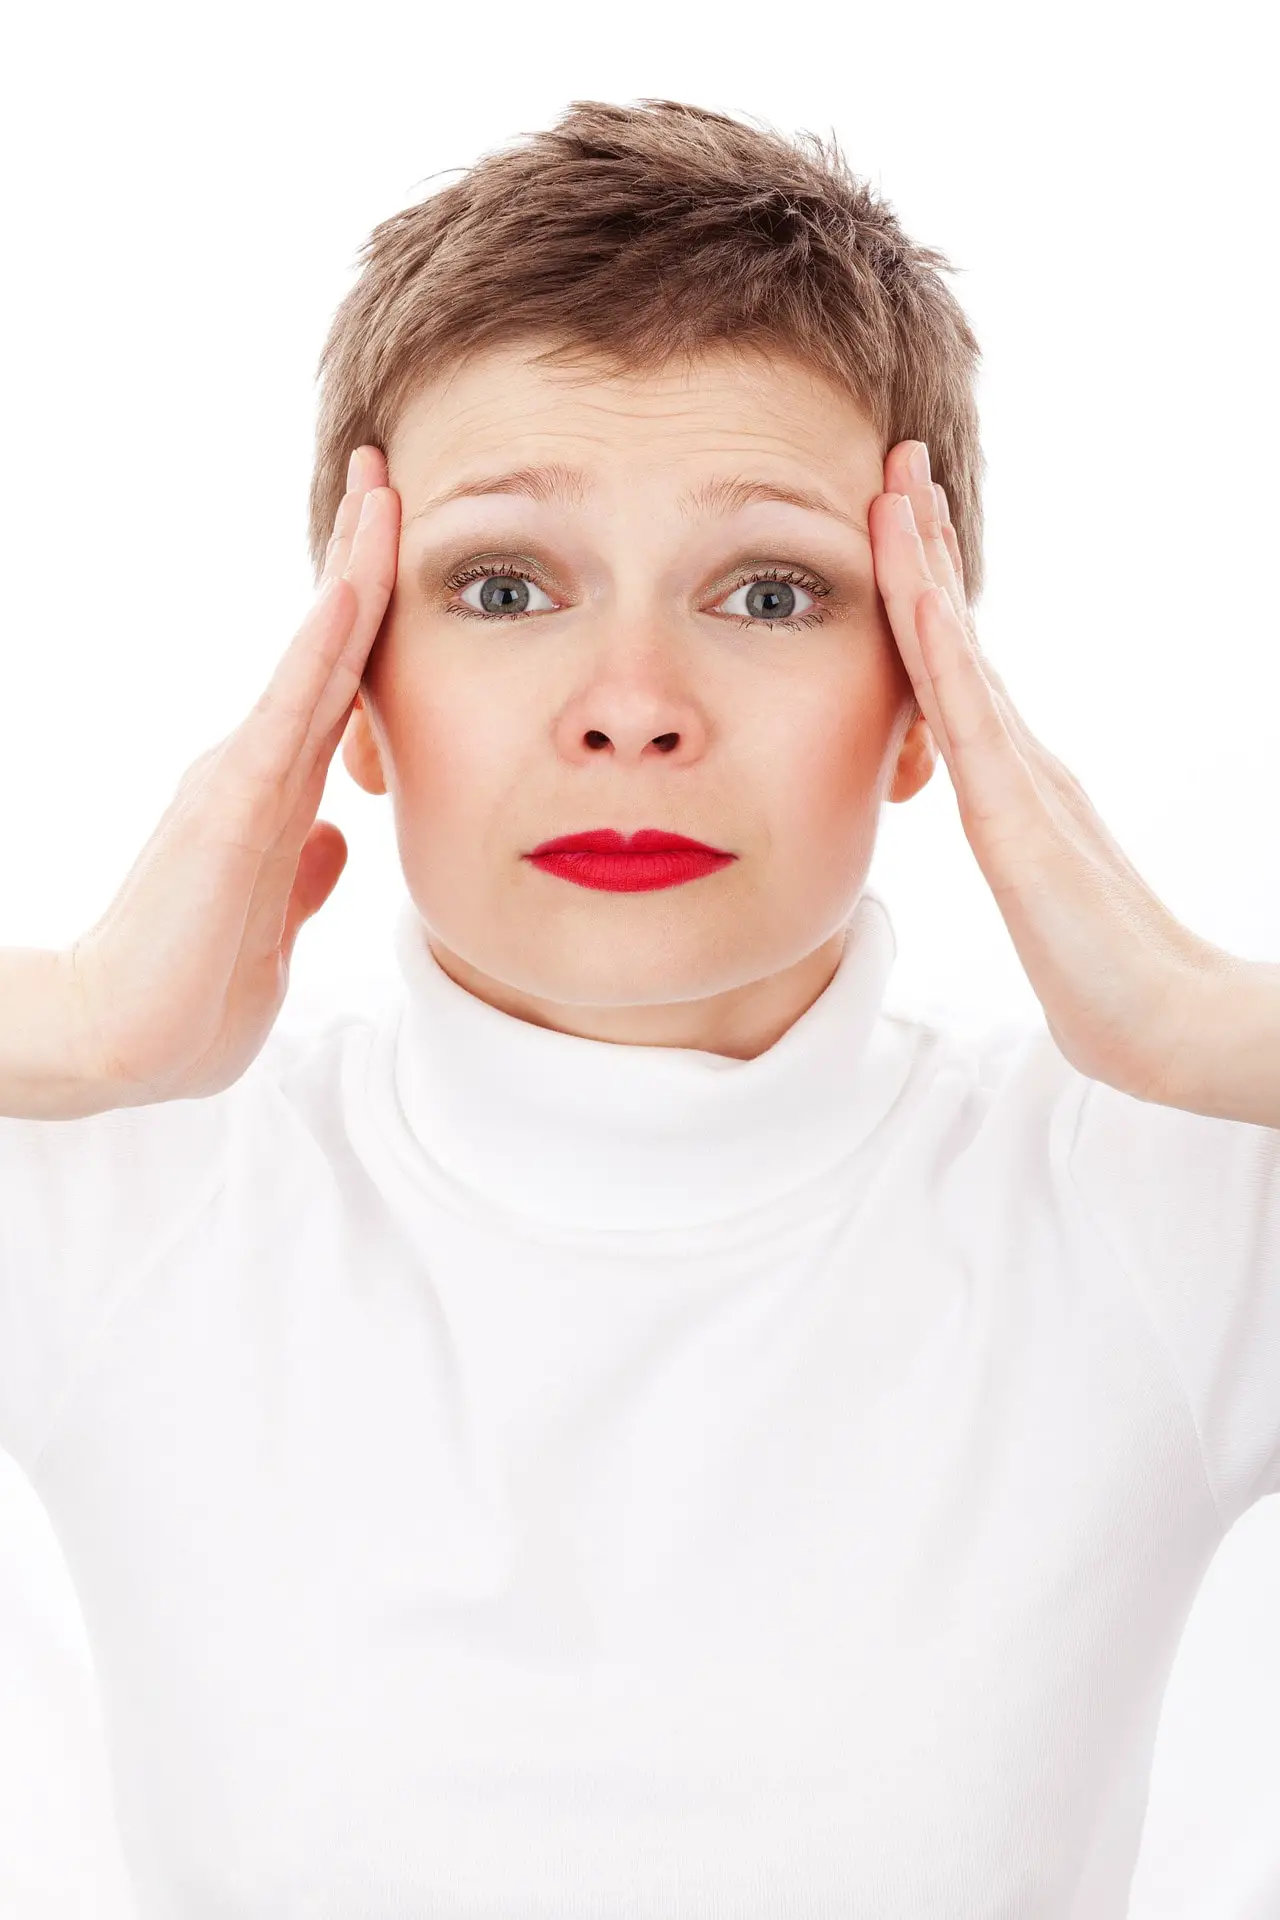 5 Natural Remedies for Headaches 